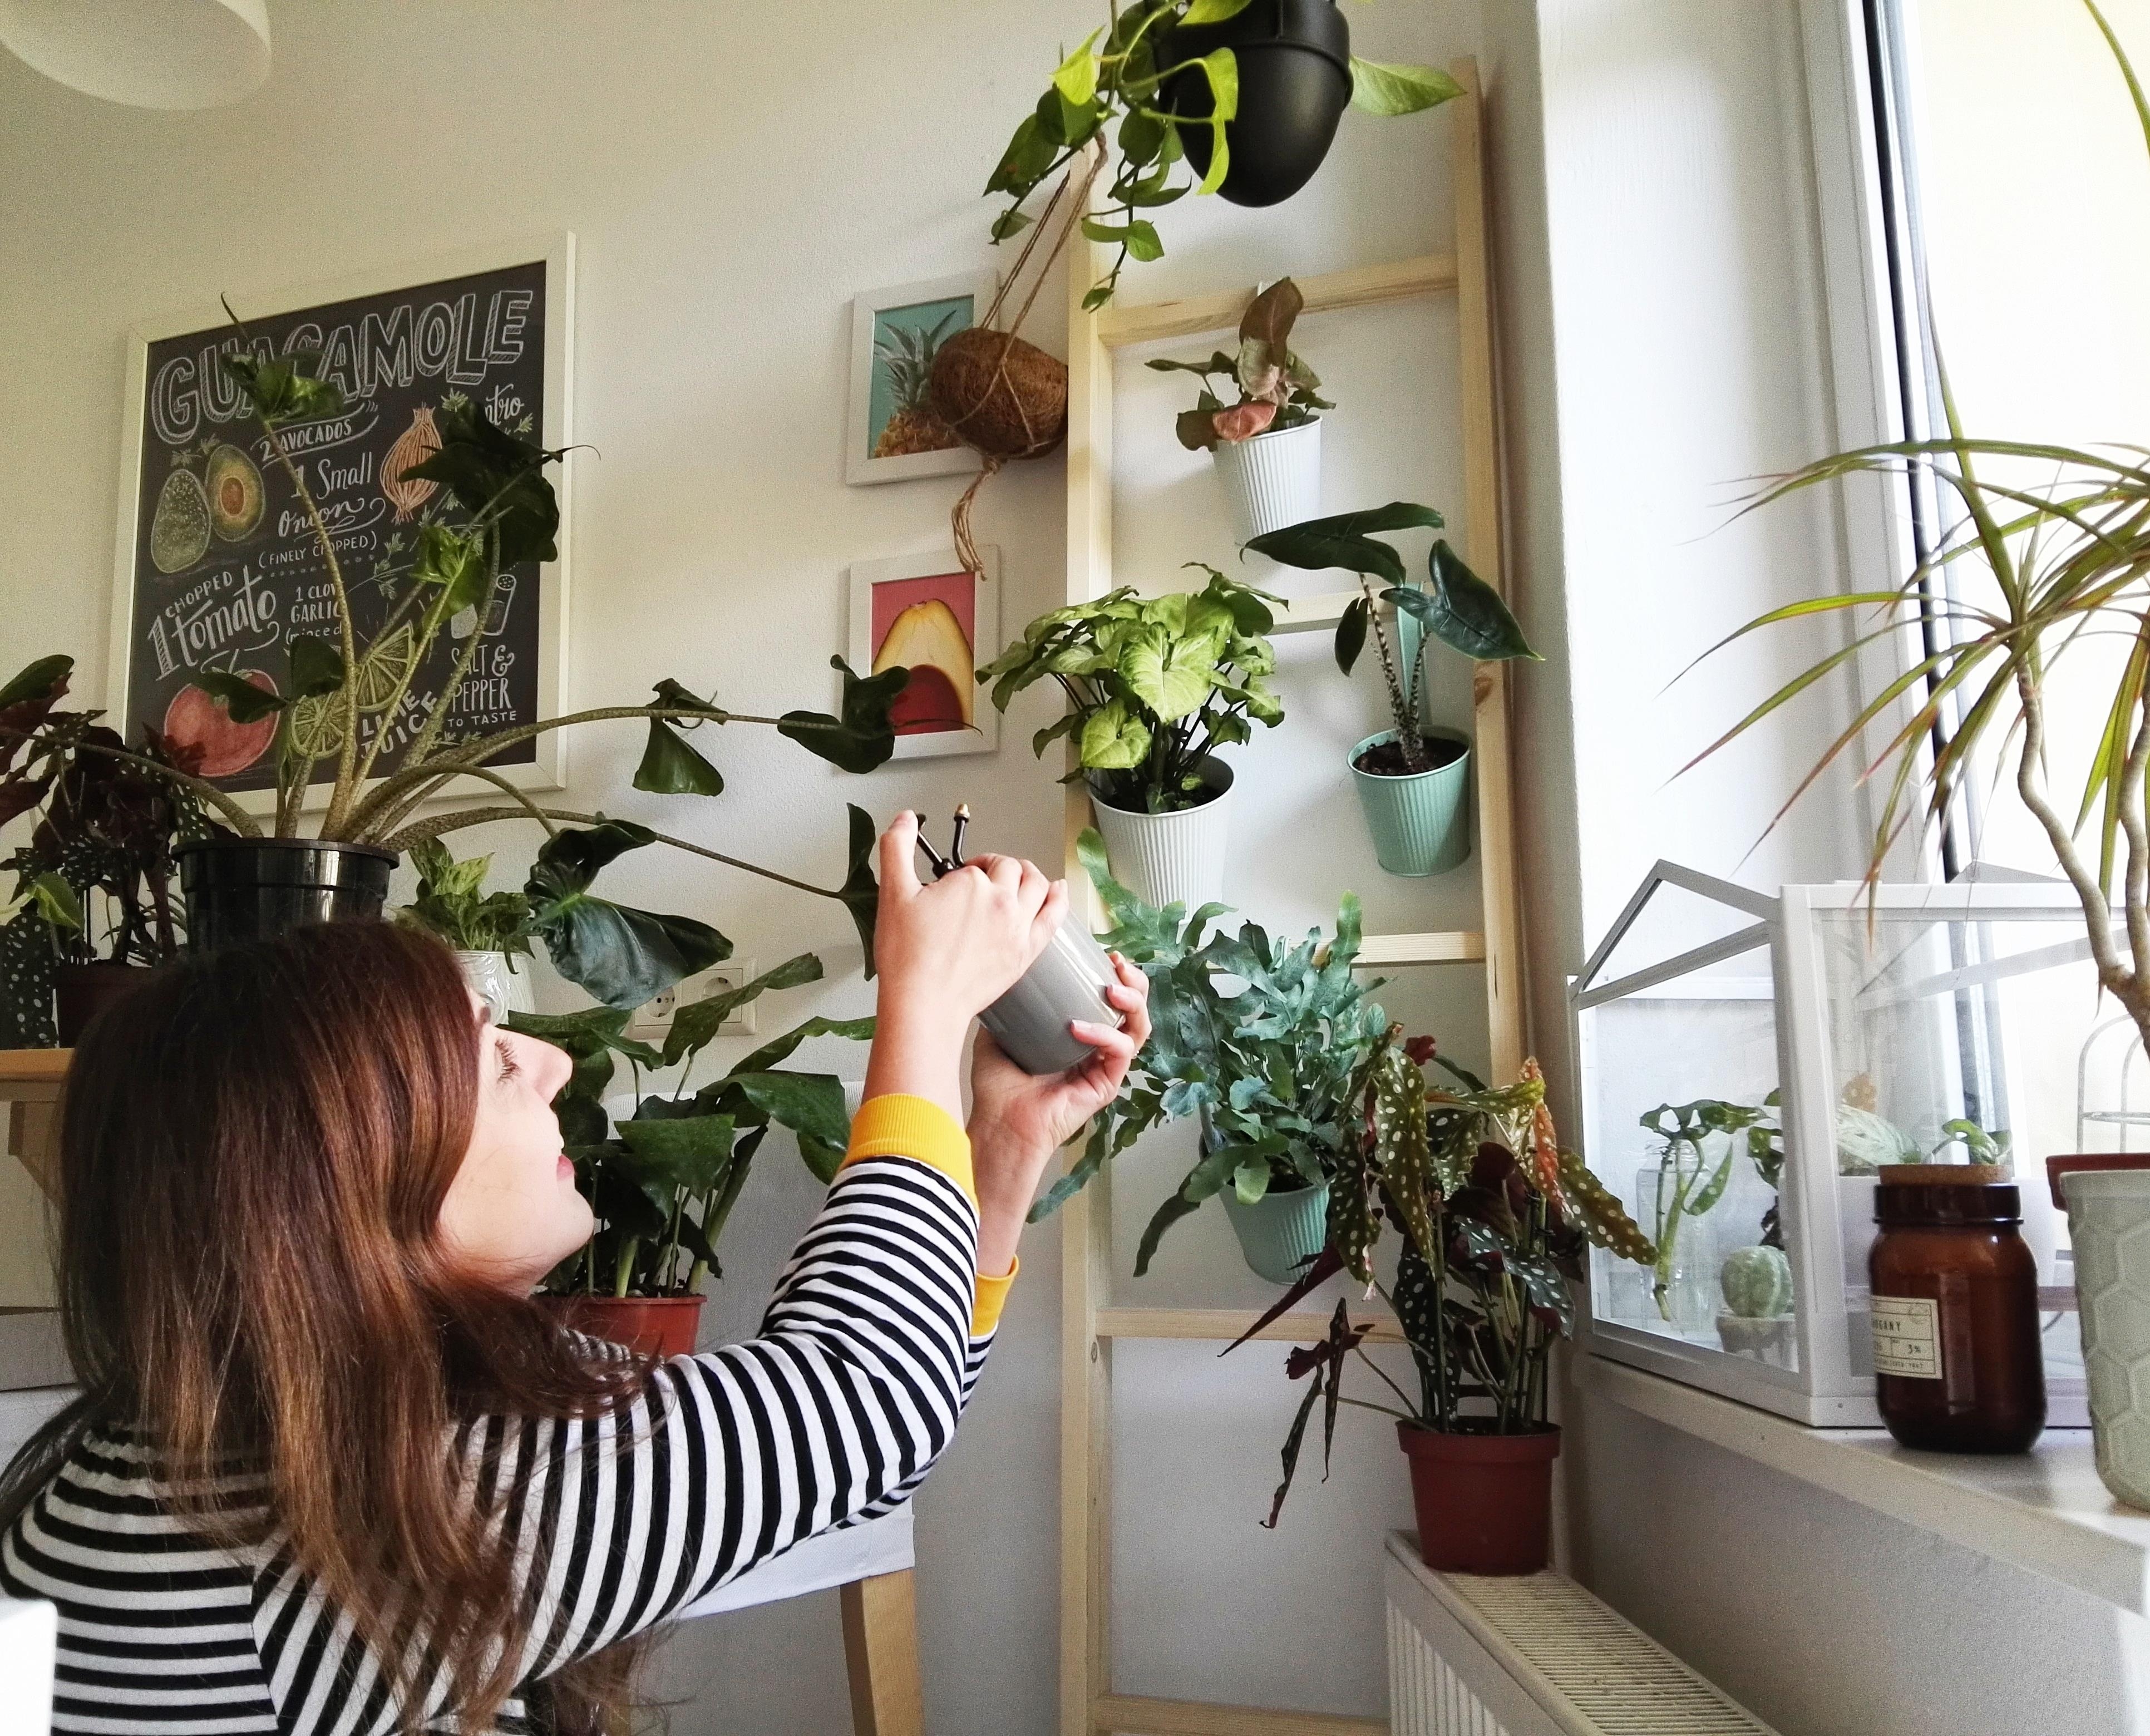 Die selbstgebaute Pflanzenleiter #plants #interior #kitchen #urbanjungle #plantlover #plantgang #pflanzenliebe